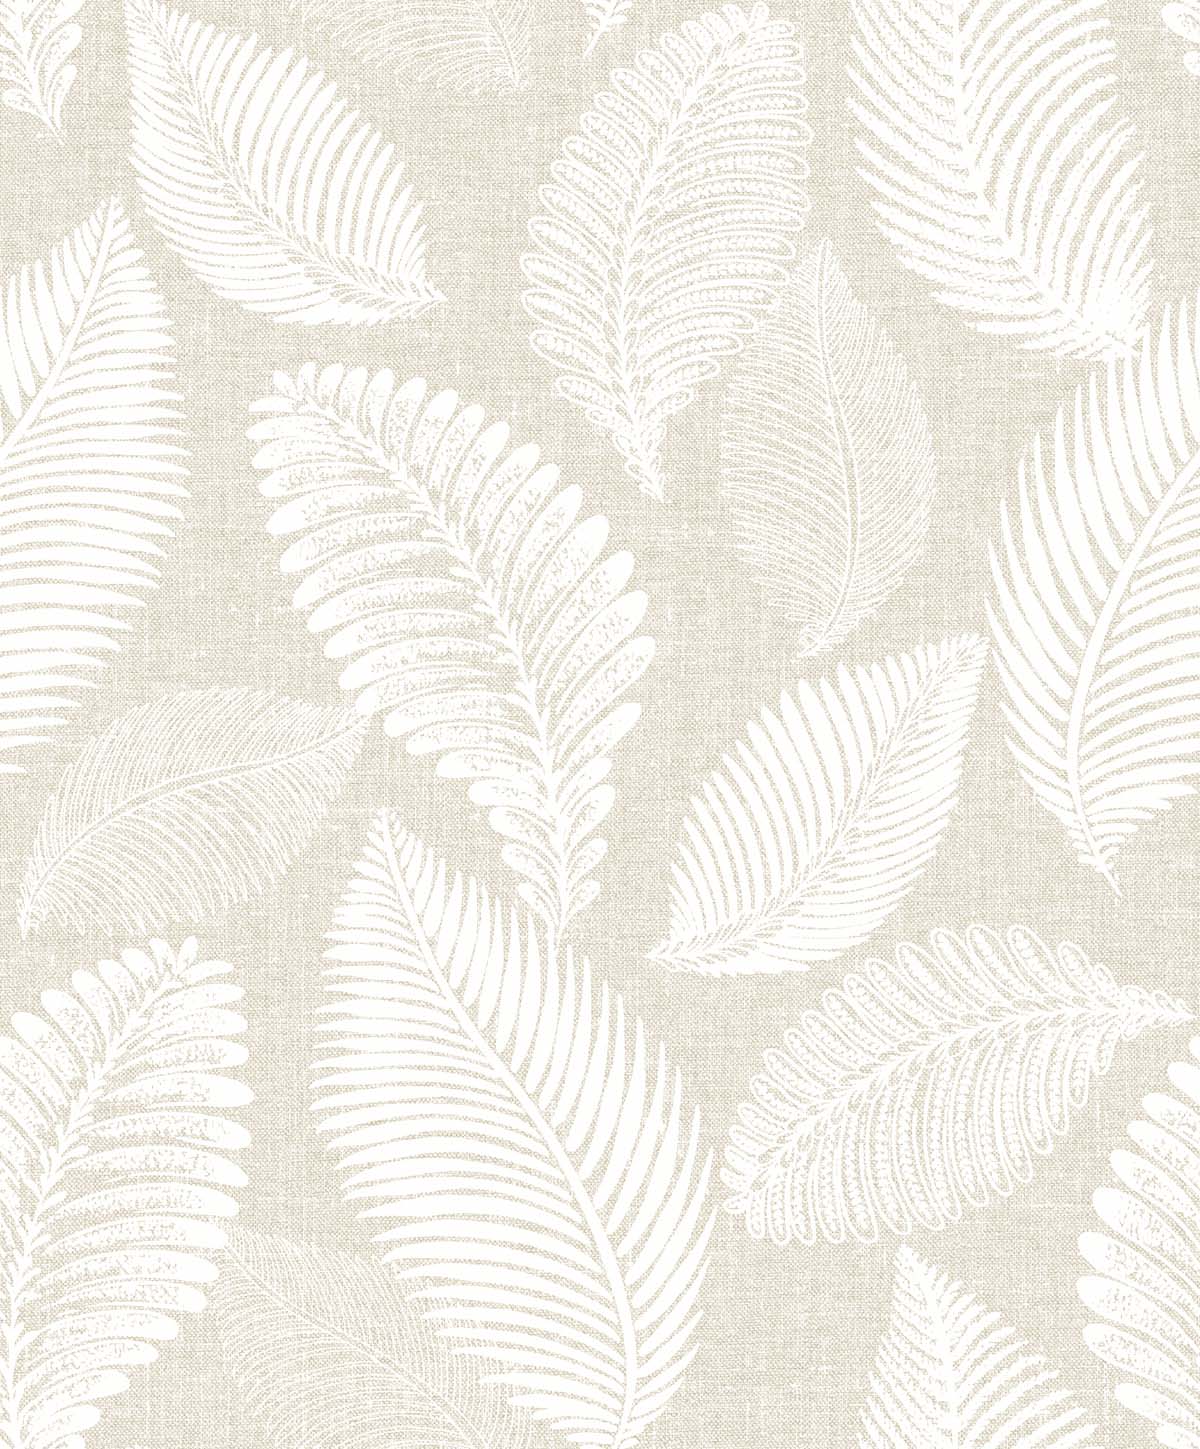 EW10005 | Tossed Leaves, Beige - Seabrook Designs Wallpaper